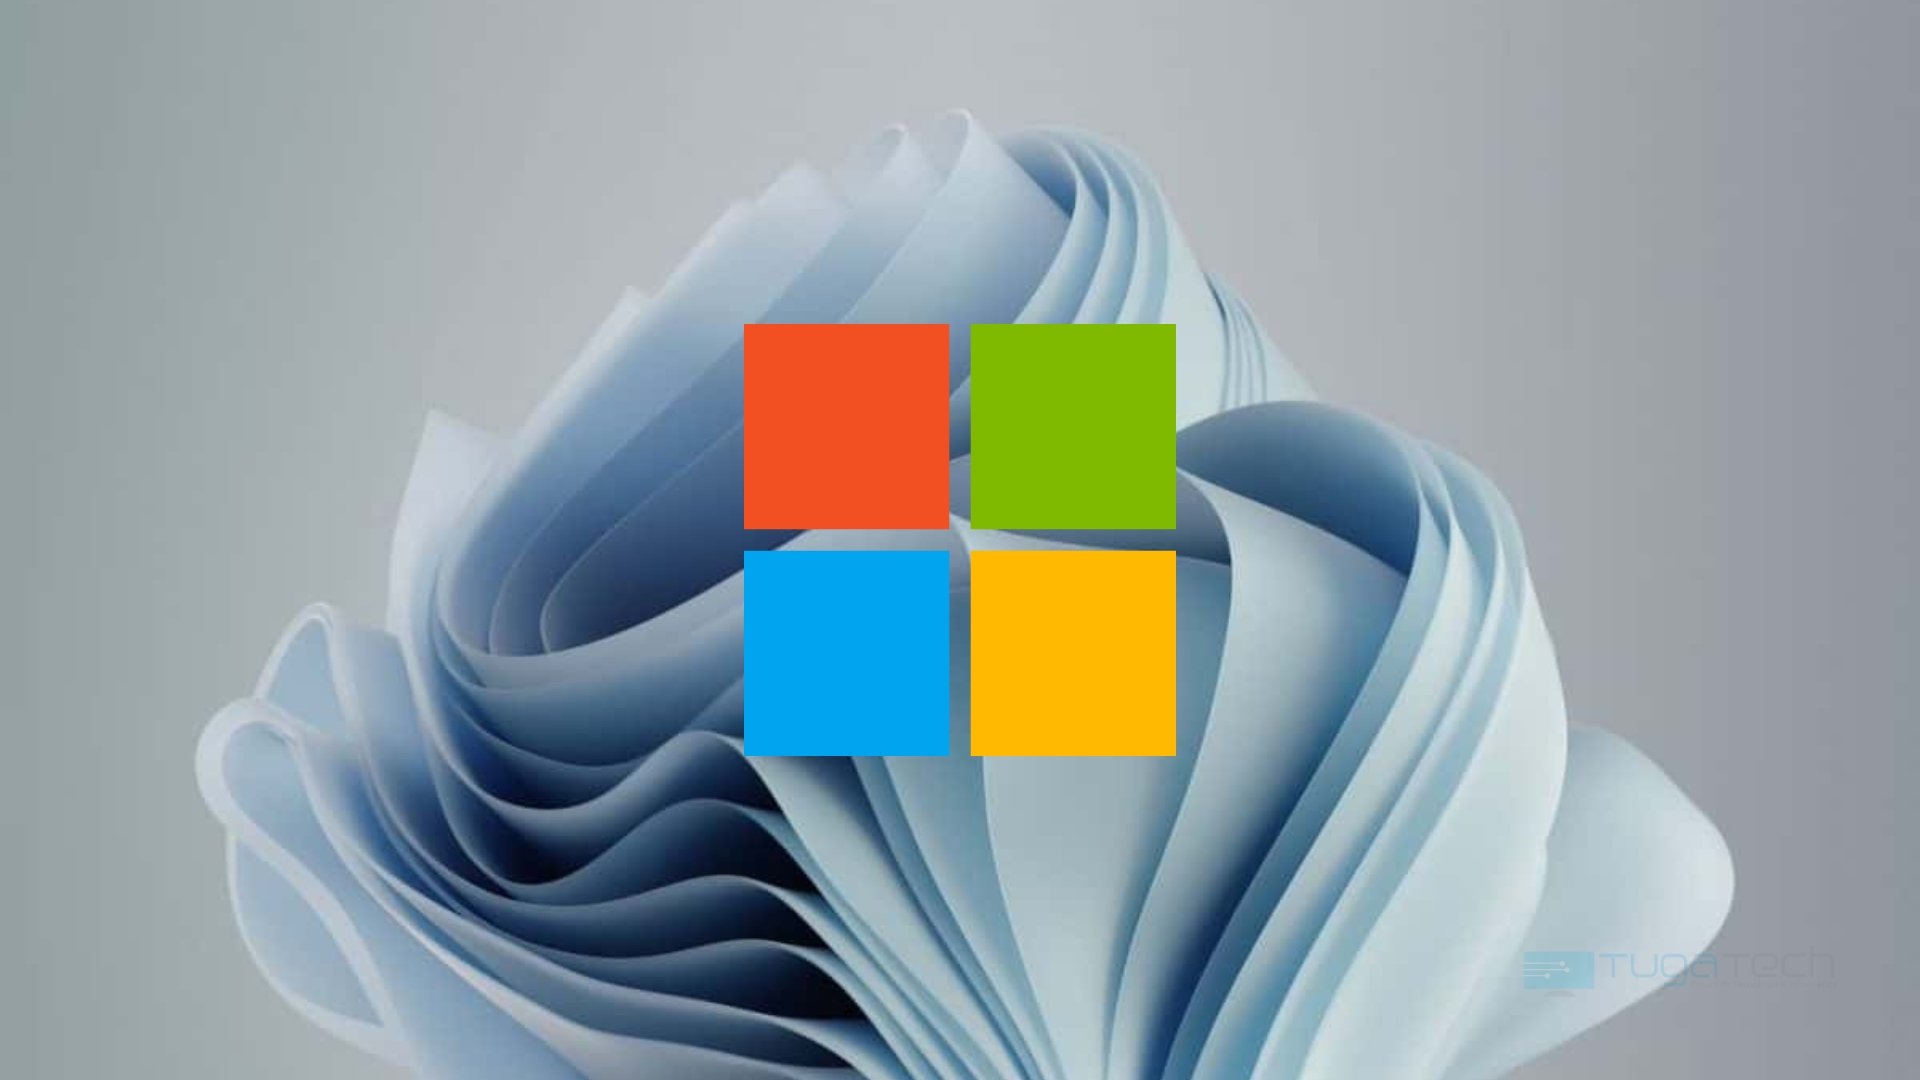 Microsoft diante do wallpaper do Windows 11